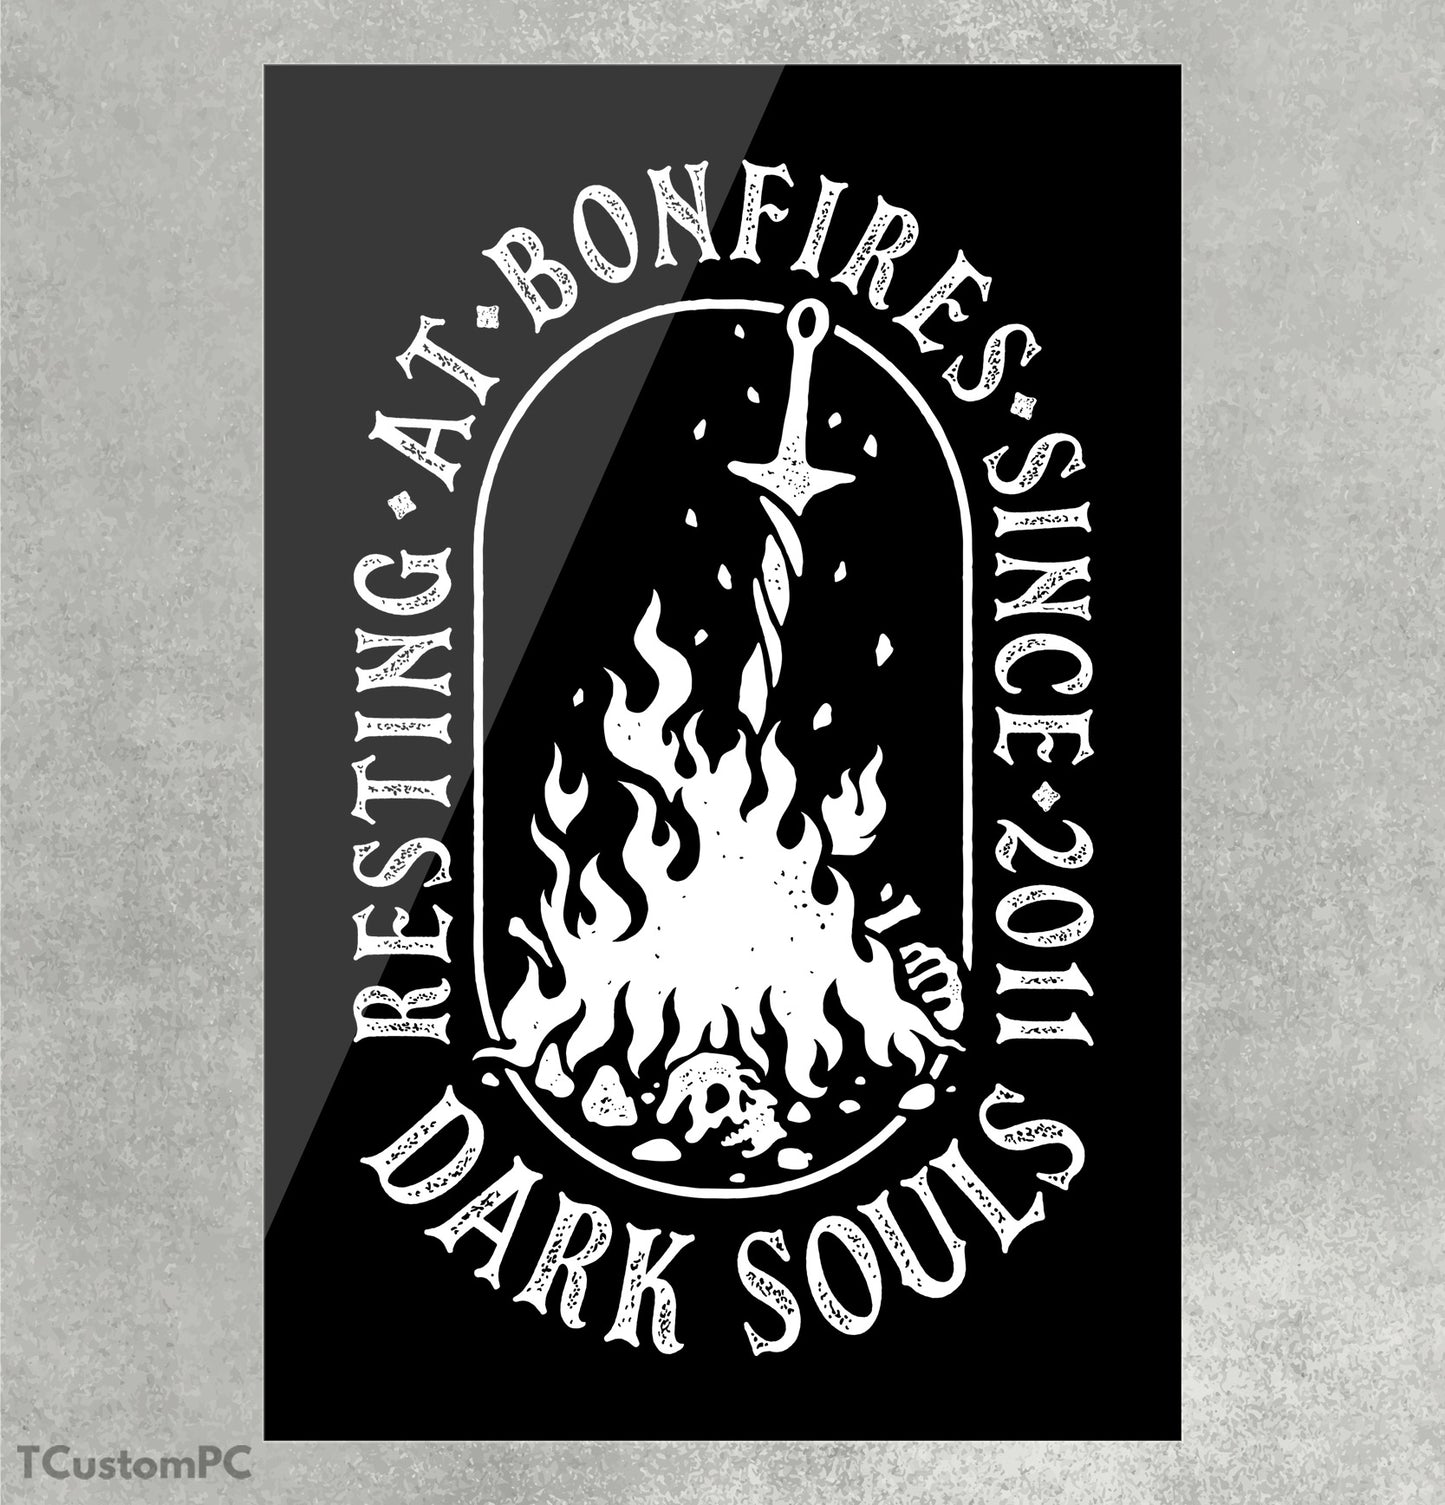 Resting at Bonfires Dark Souls v2 box